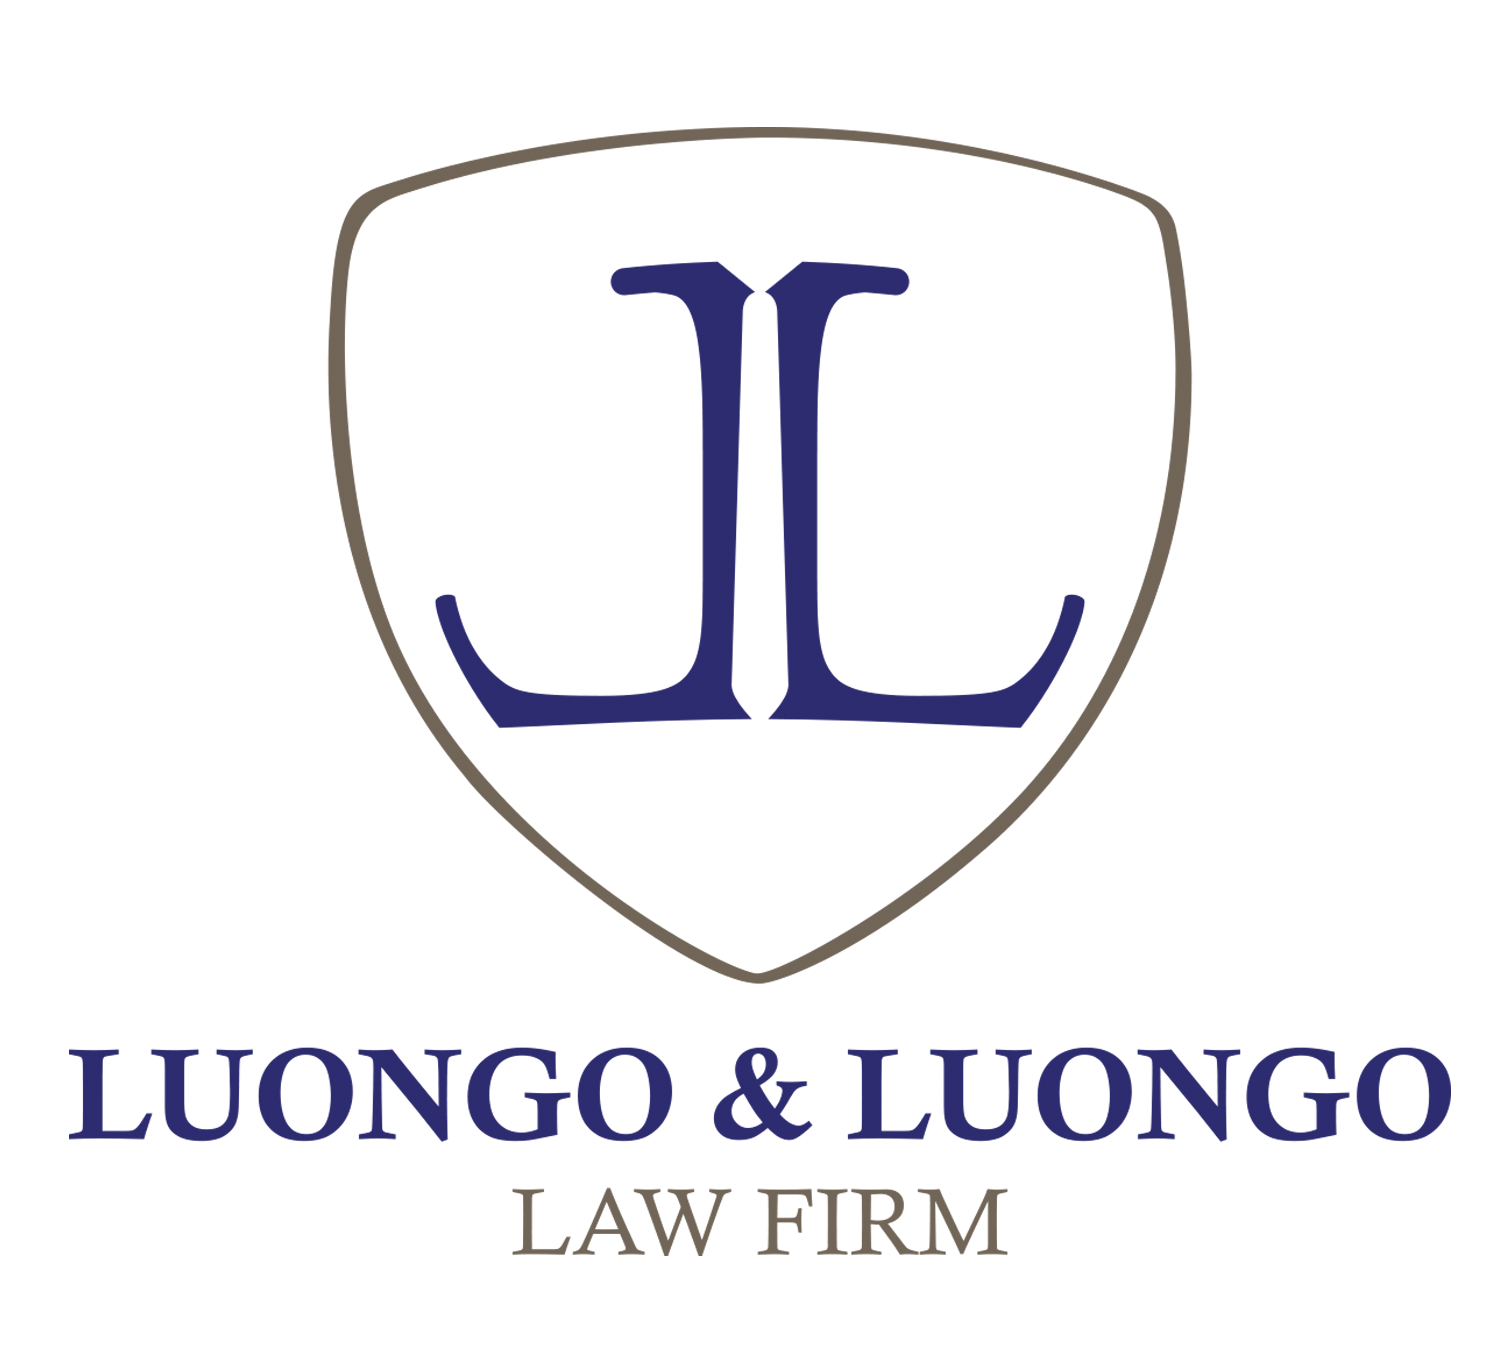 Studio Legale degli Avvocati Luongo - 2017